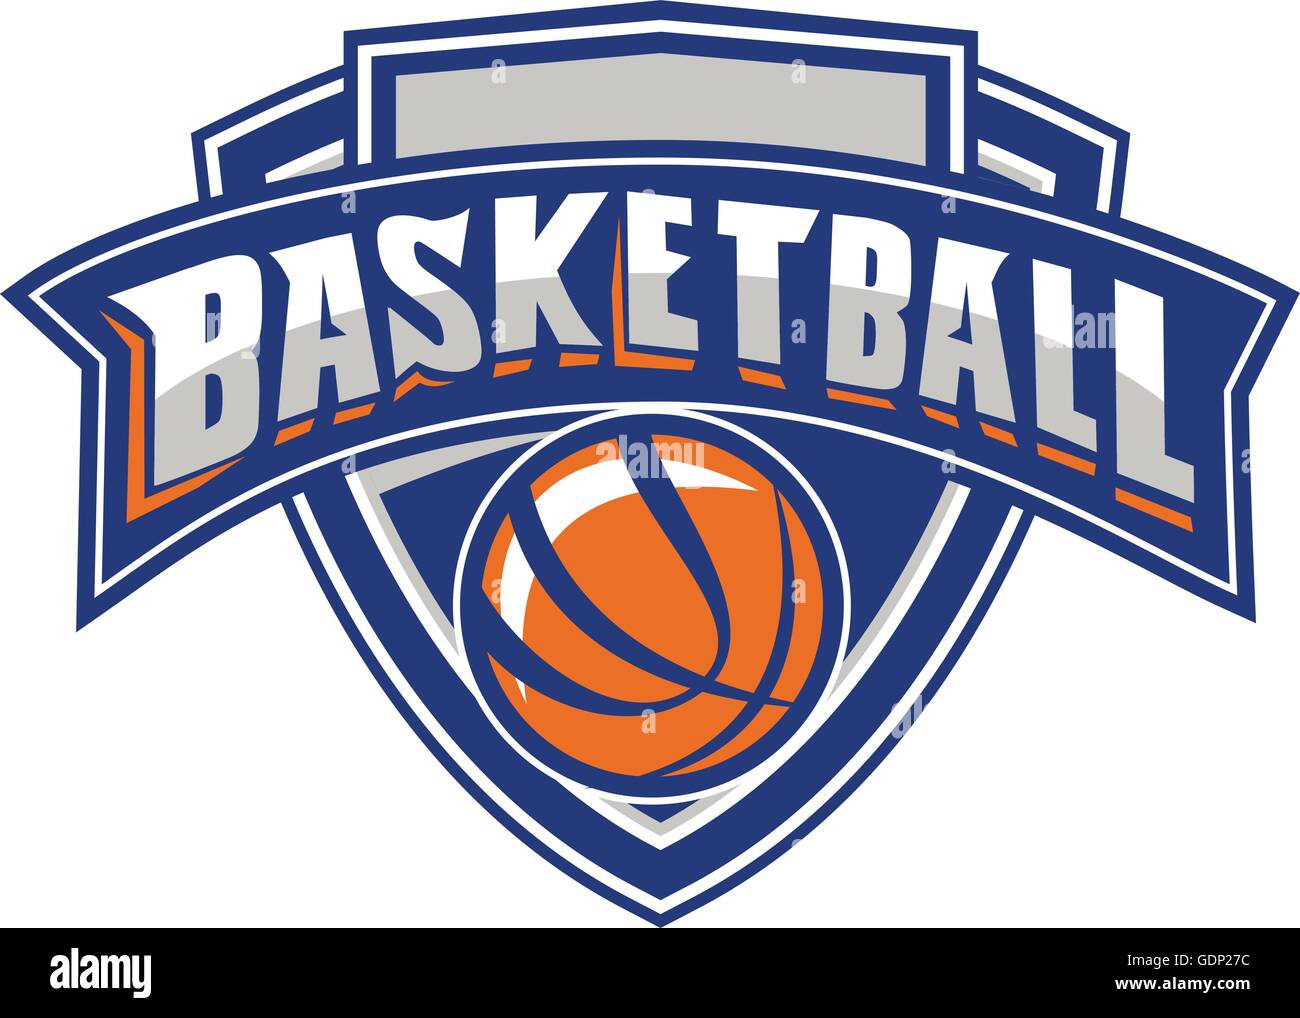 Abbildung einer Basketball-Kugel im Inneren Schild mit dem Wort Text BASKETBALL in einem Band-Banner im retro-Stil gemacht. Stock Vektor